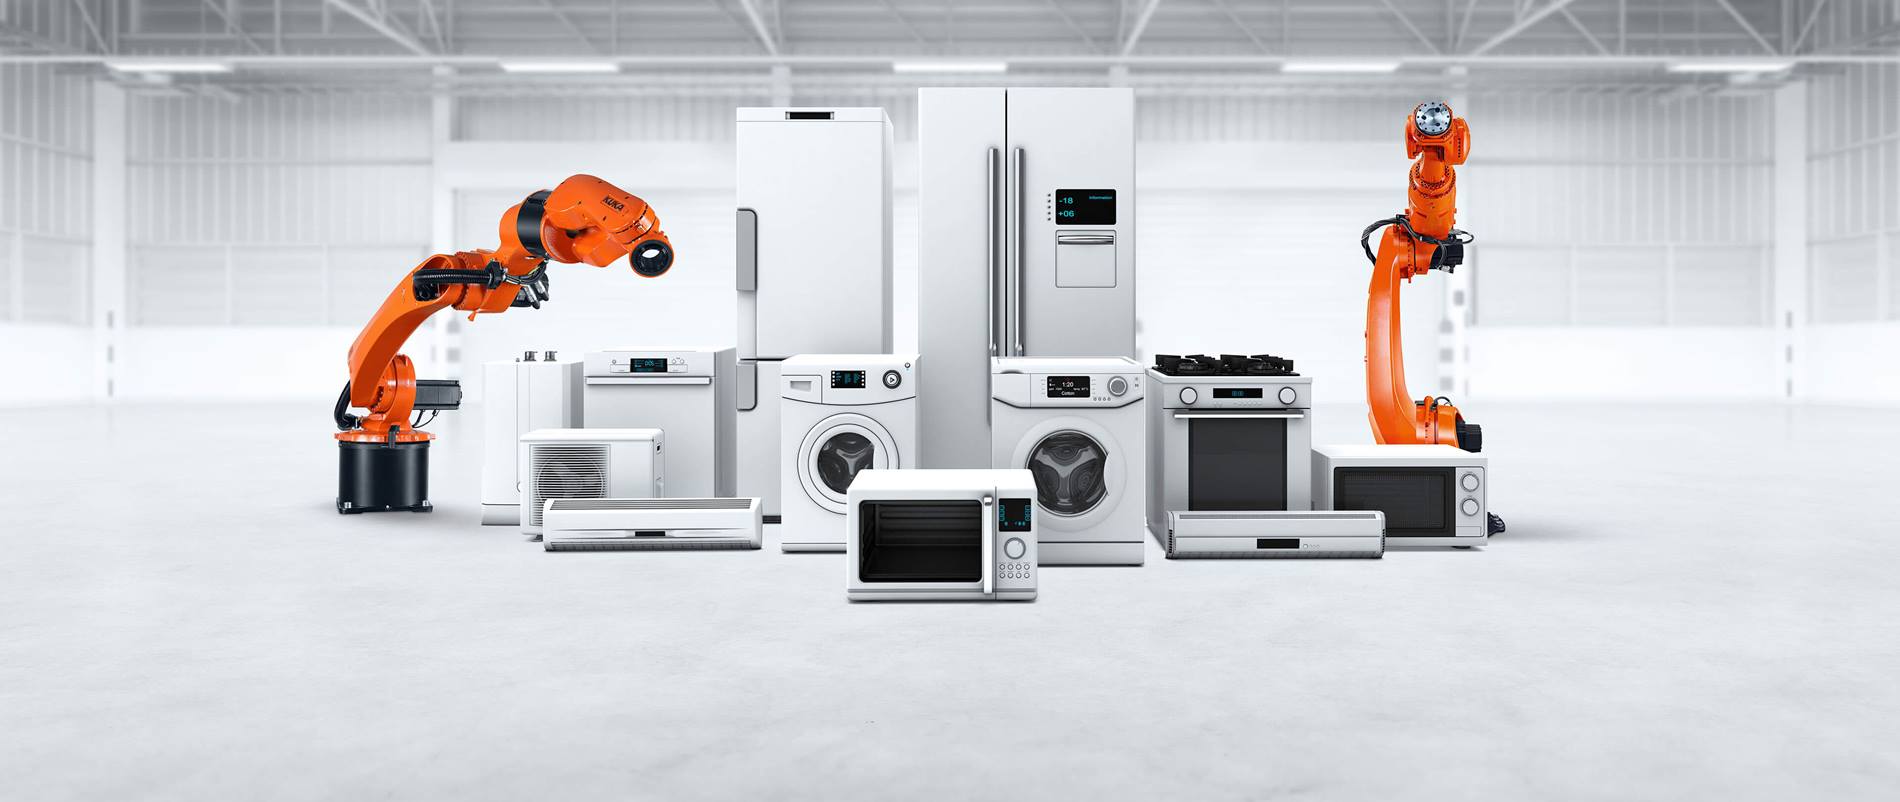 Verschiedene Weiße Waren: Kühlschränke, Waschmaschinen, Herd, Geschirrspüler, Mikrowellen, Laminiergerät, Ventilator und zwei KUKA Roboter in Industriehalle